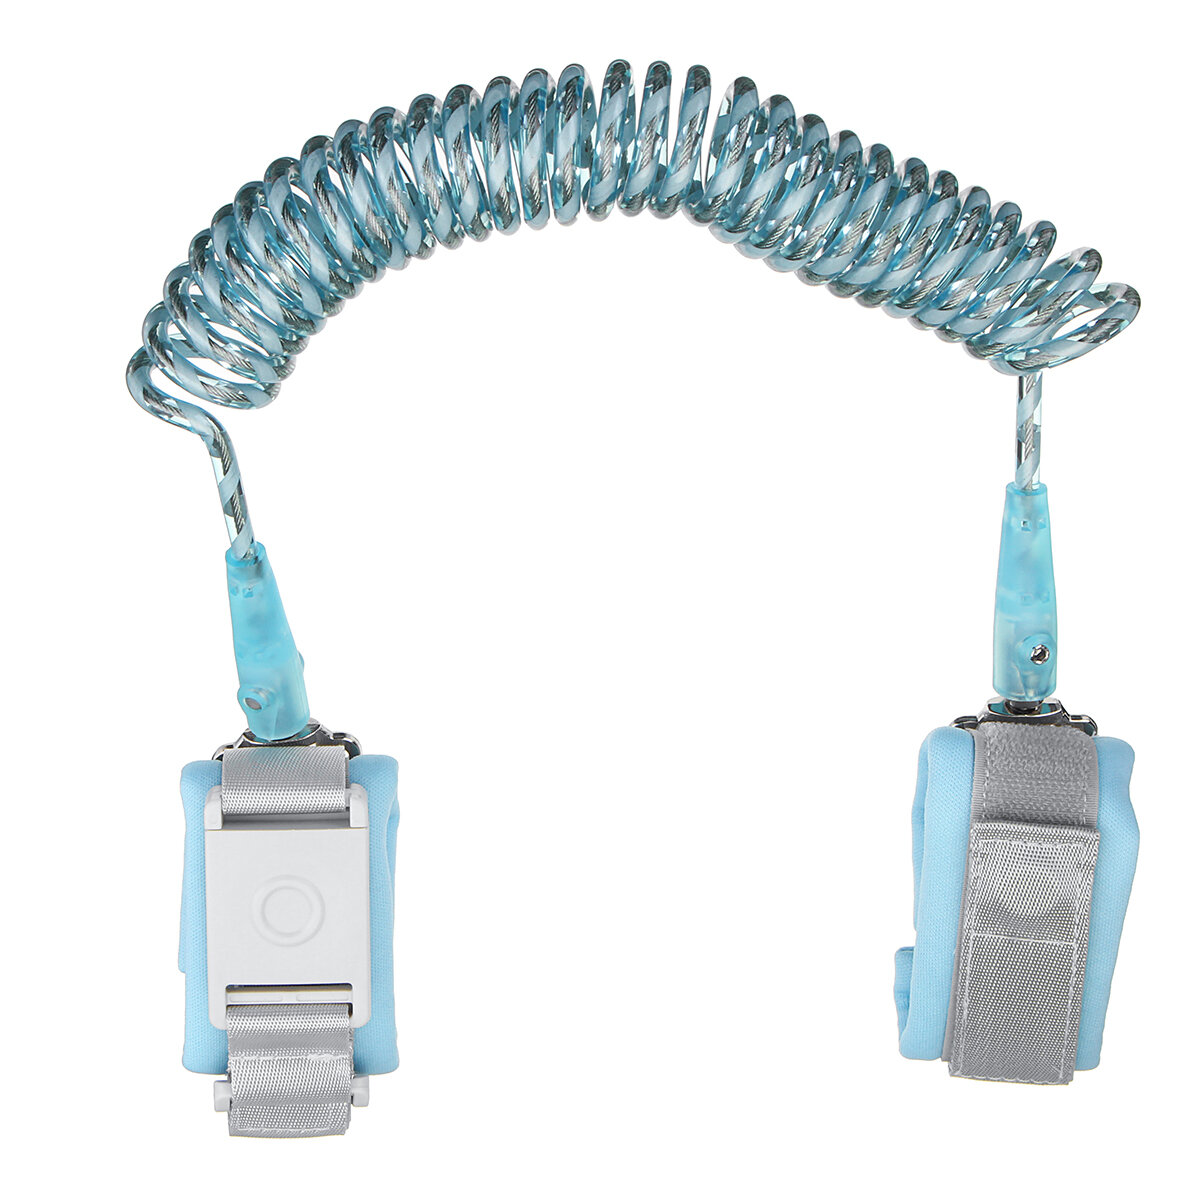 Braccialetto antiperdita per bambini con cinturino regolabile, corda riflettente, testa girevole e chiusura a induzione da 1,5 m, 2 m o 2,5 m.